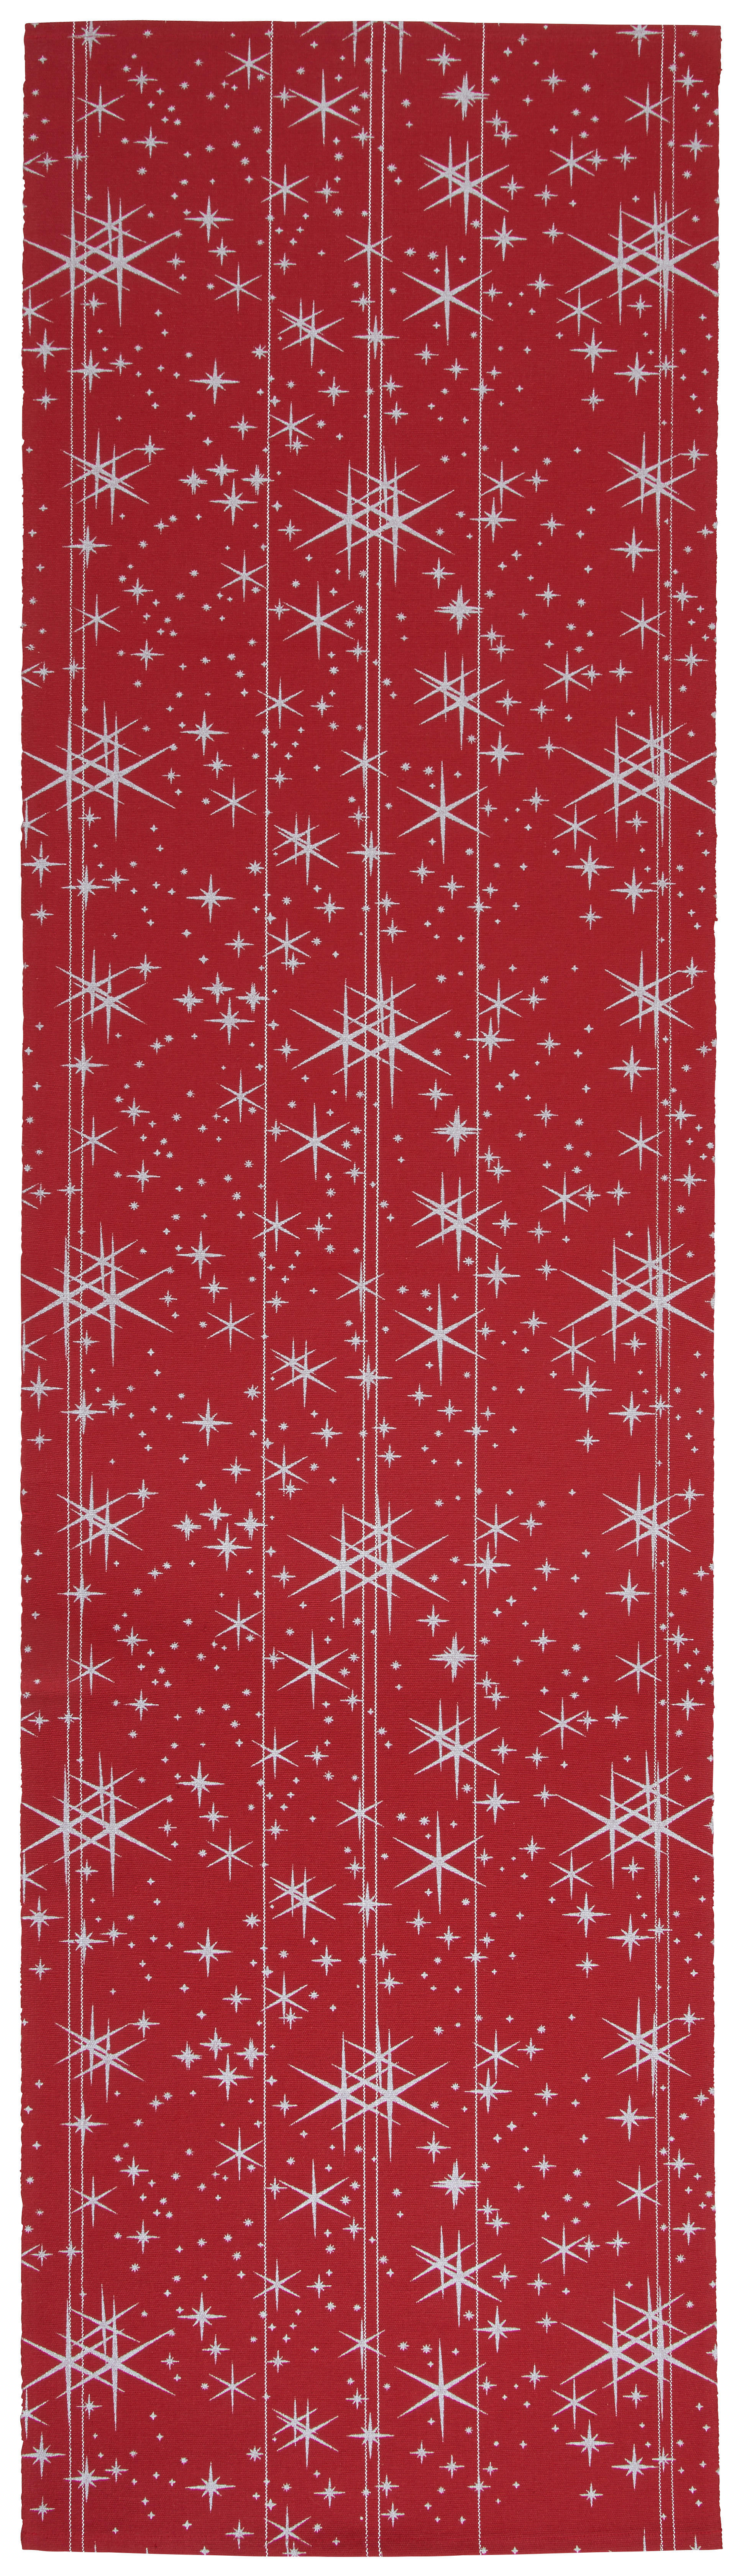 TISCHLÄUFER Star 40/150 cm  - Rot, Design, Textil (40/150cm) - X-Mas